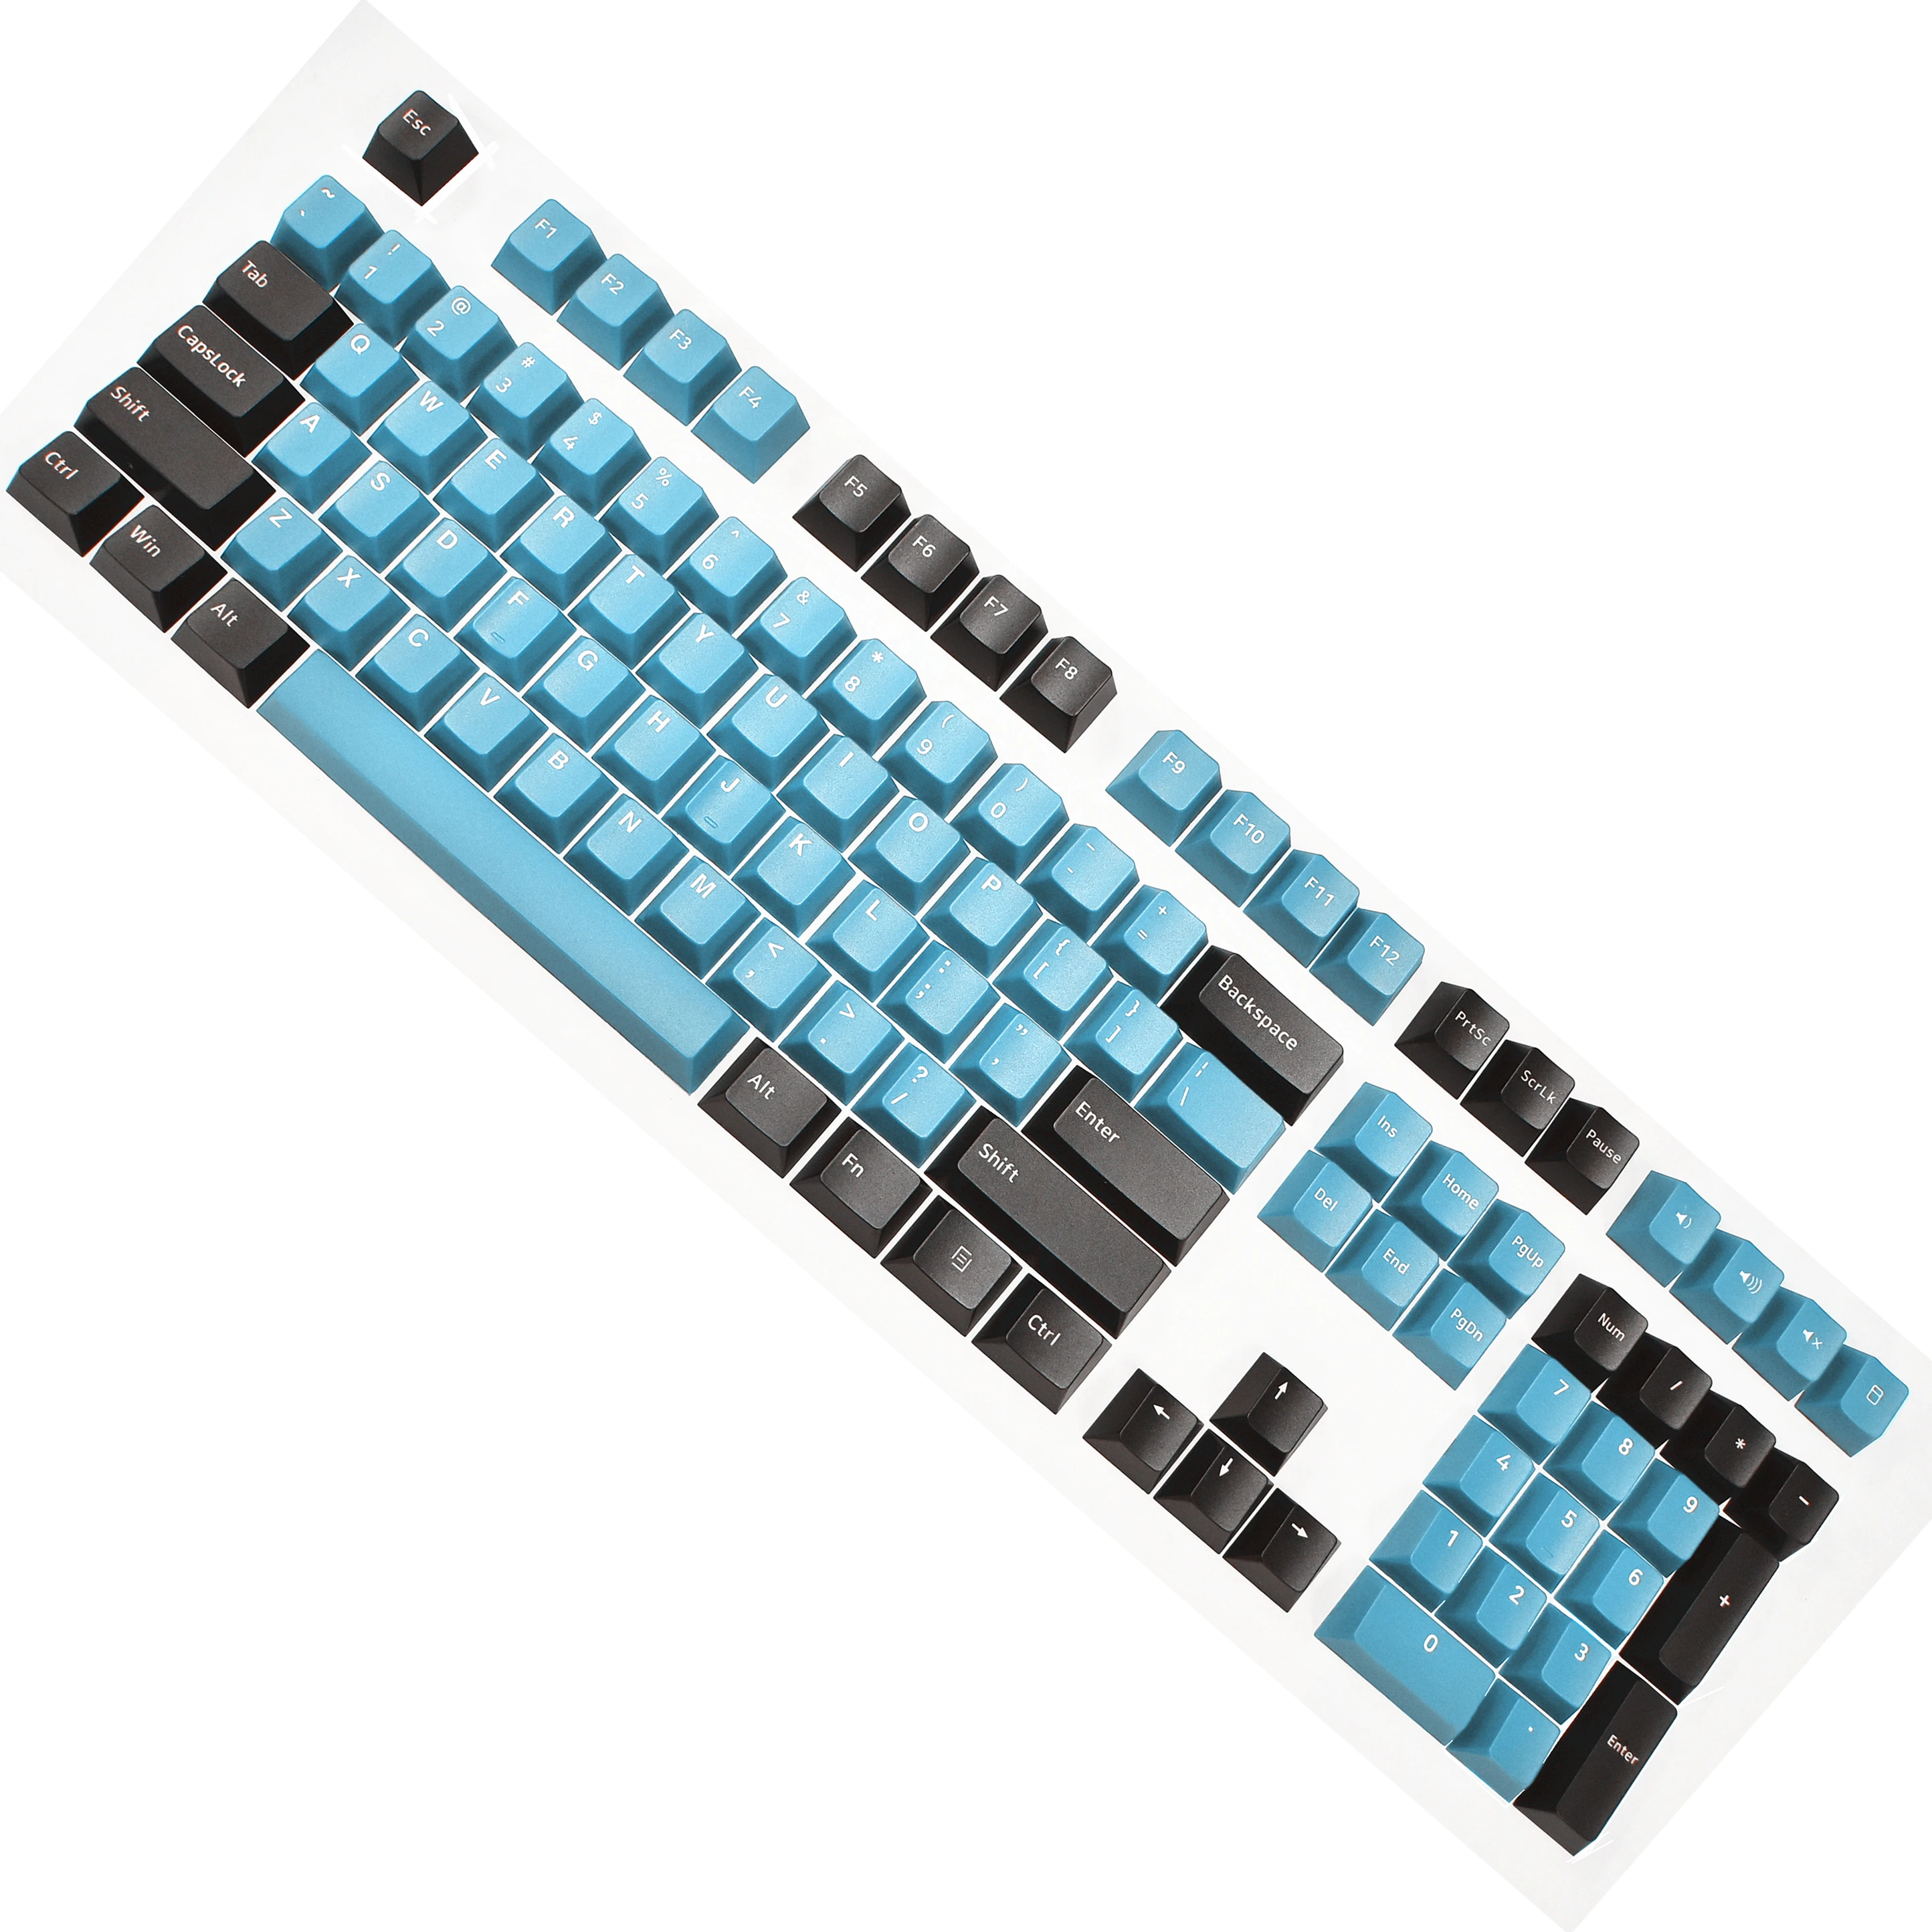 OSHID 90% колпачки для клавиш с вишневым профилем колпачки для клавиш на заказ 96 клавиш раскладка клавиш PBT пустые колпачки для механической клавиатуры